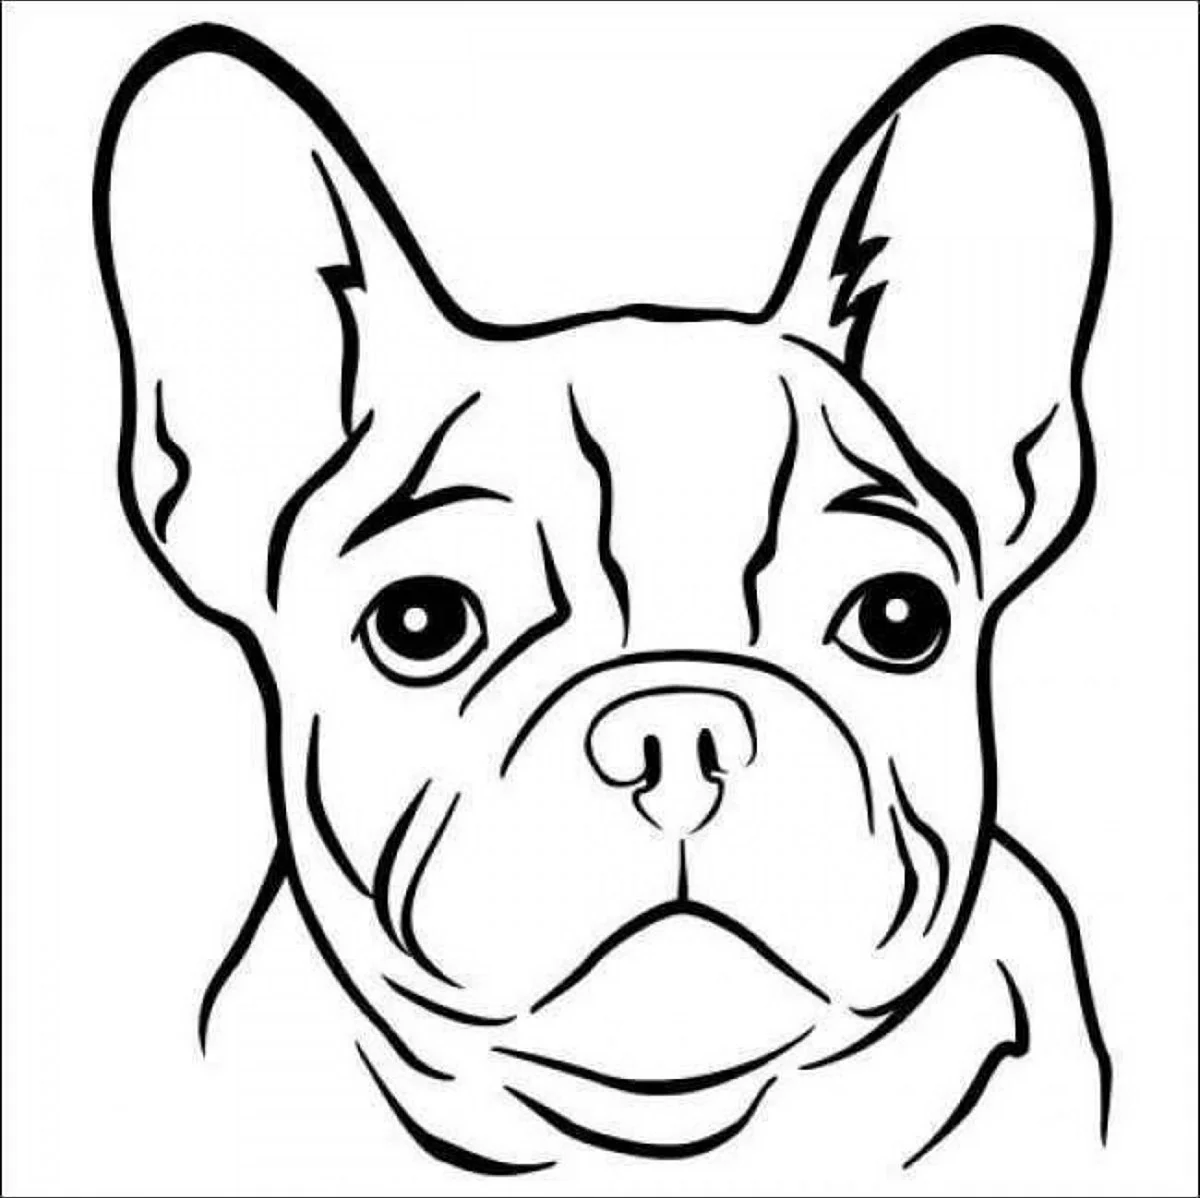 Раскраска собачка французский бульдог. Для срисовки